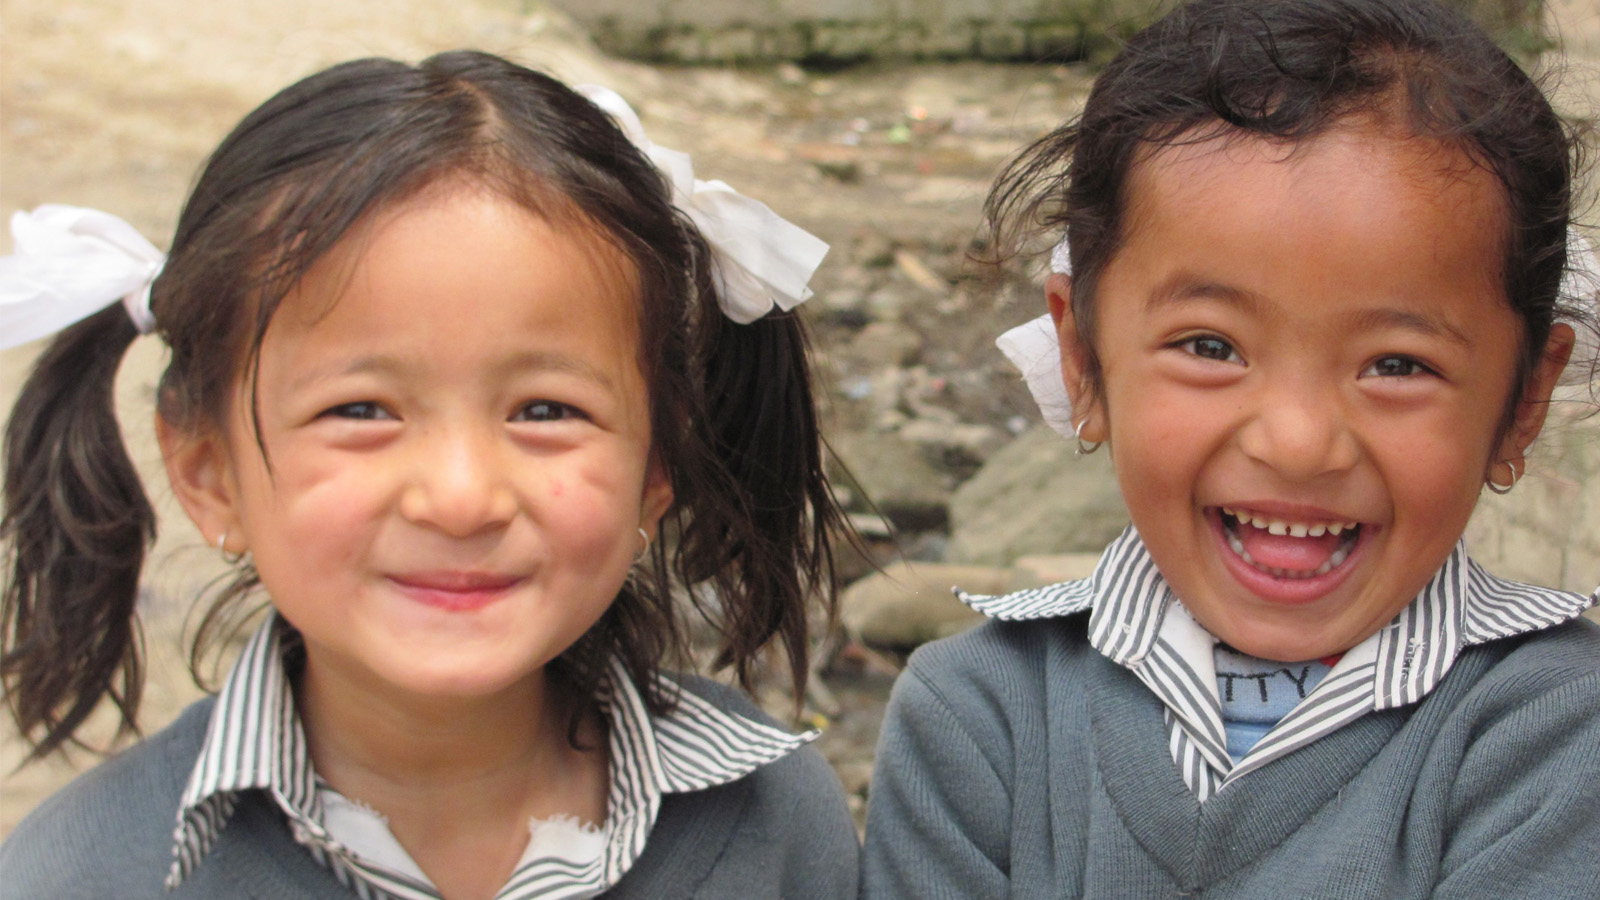 नेपालीमा वढ्दैछ खुसी हुने दर, विश्वका सबैभन्दा खुसी मुलुक मध्ये ७८औँमा नेपाल